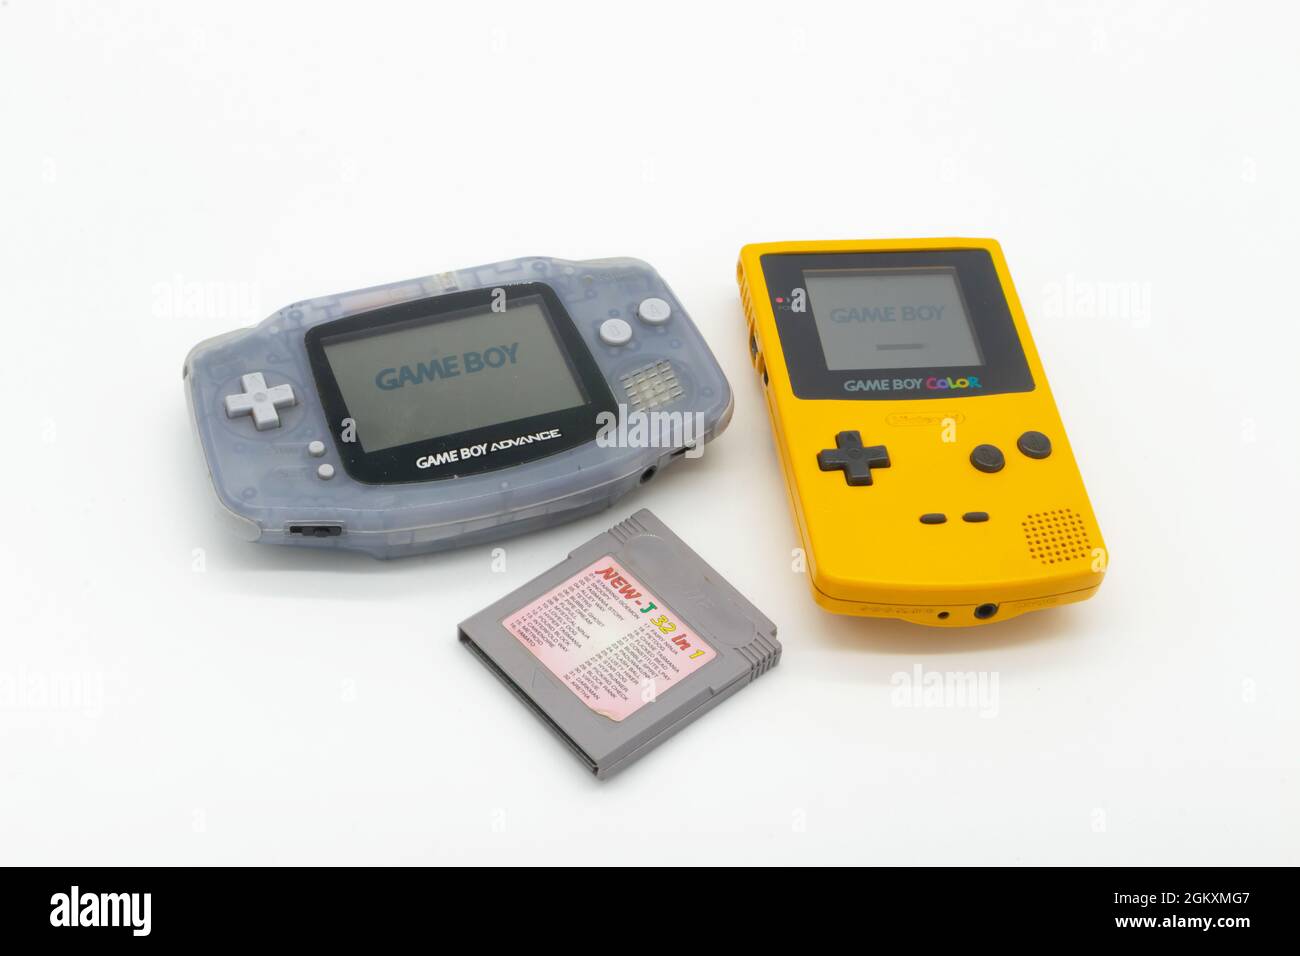 Nintendo Game Boy Advance und Game Boy Color Handheld-Konsolen-Gerät und  Spielkassette Stockfotografie - Alamy